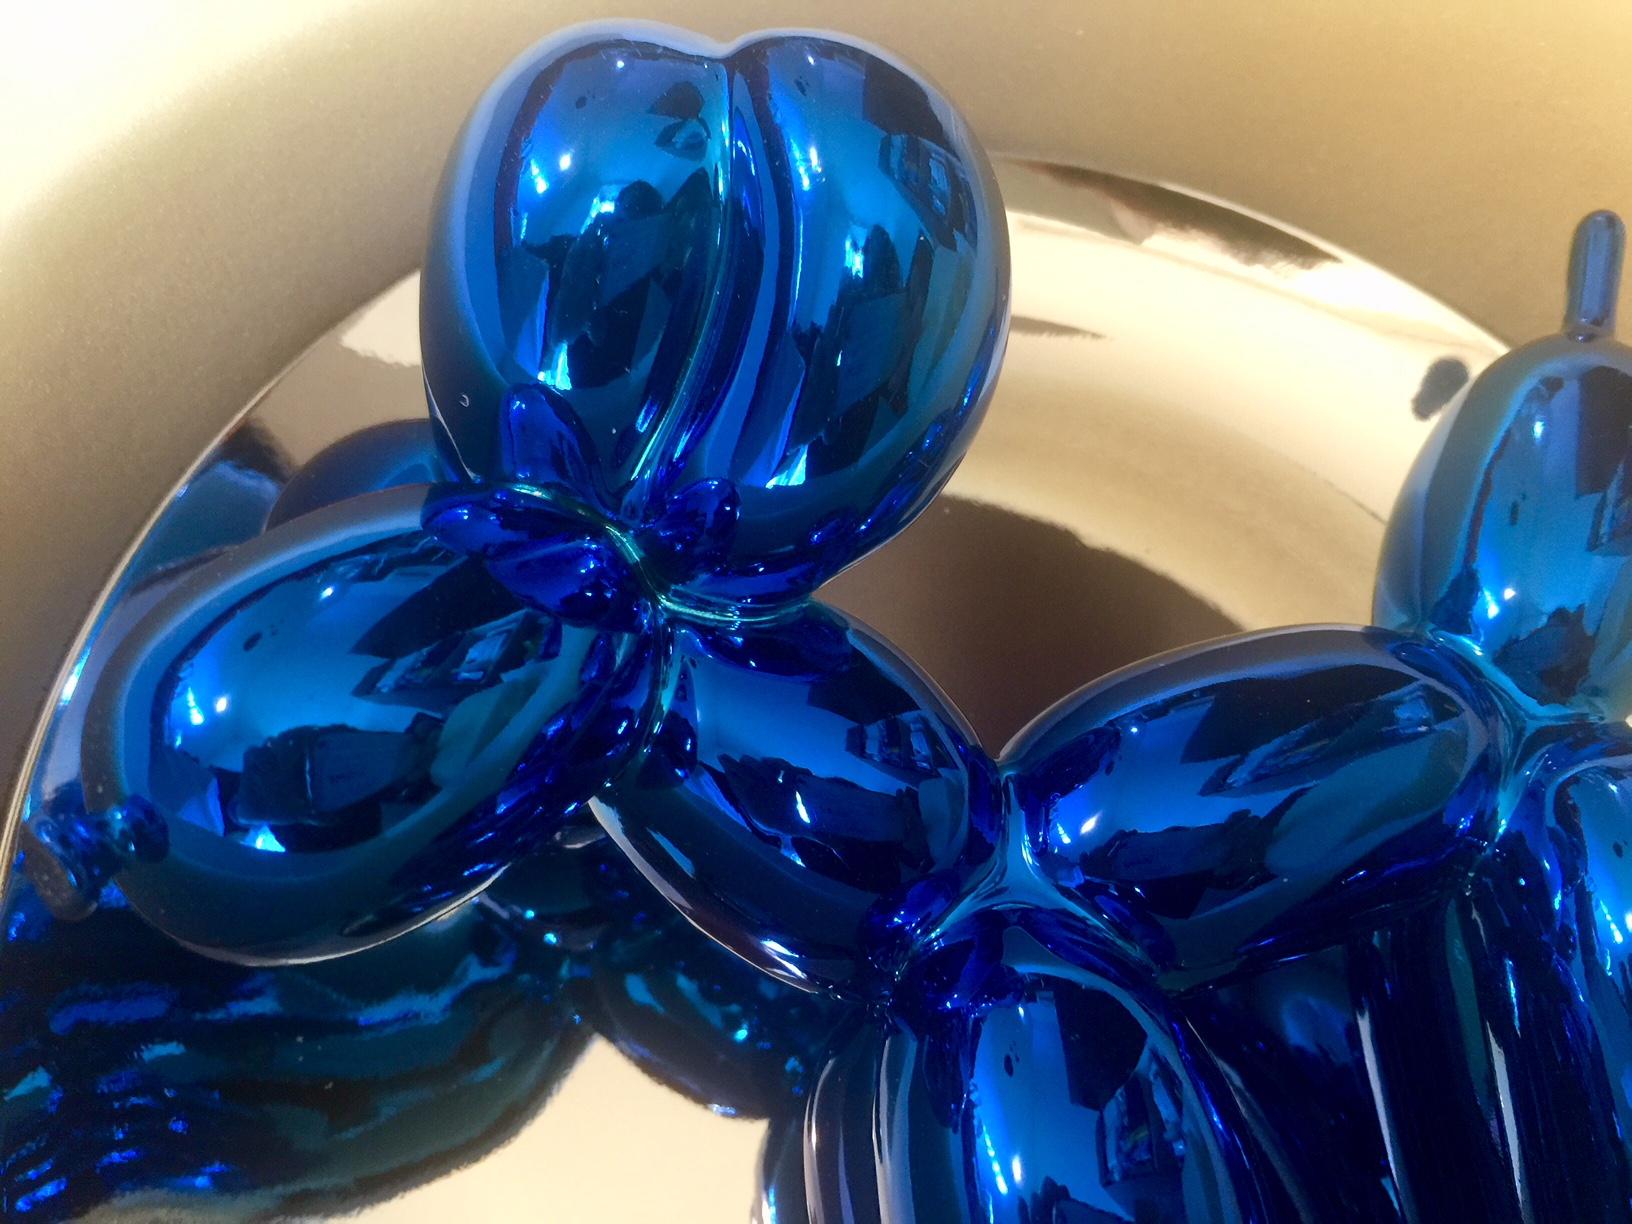 L'œuvre de Jeff Koons Balloon Dog fait partie d'une édition limitée à 2300 exemplaires. La sculpture, réalisée en porcelaine émaillée bleue, mesure 27 x 27 cm.

Balloon Dog Blue appartient à une édition rare réalisée par l'artiste en 2002 en